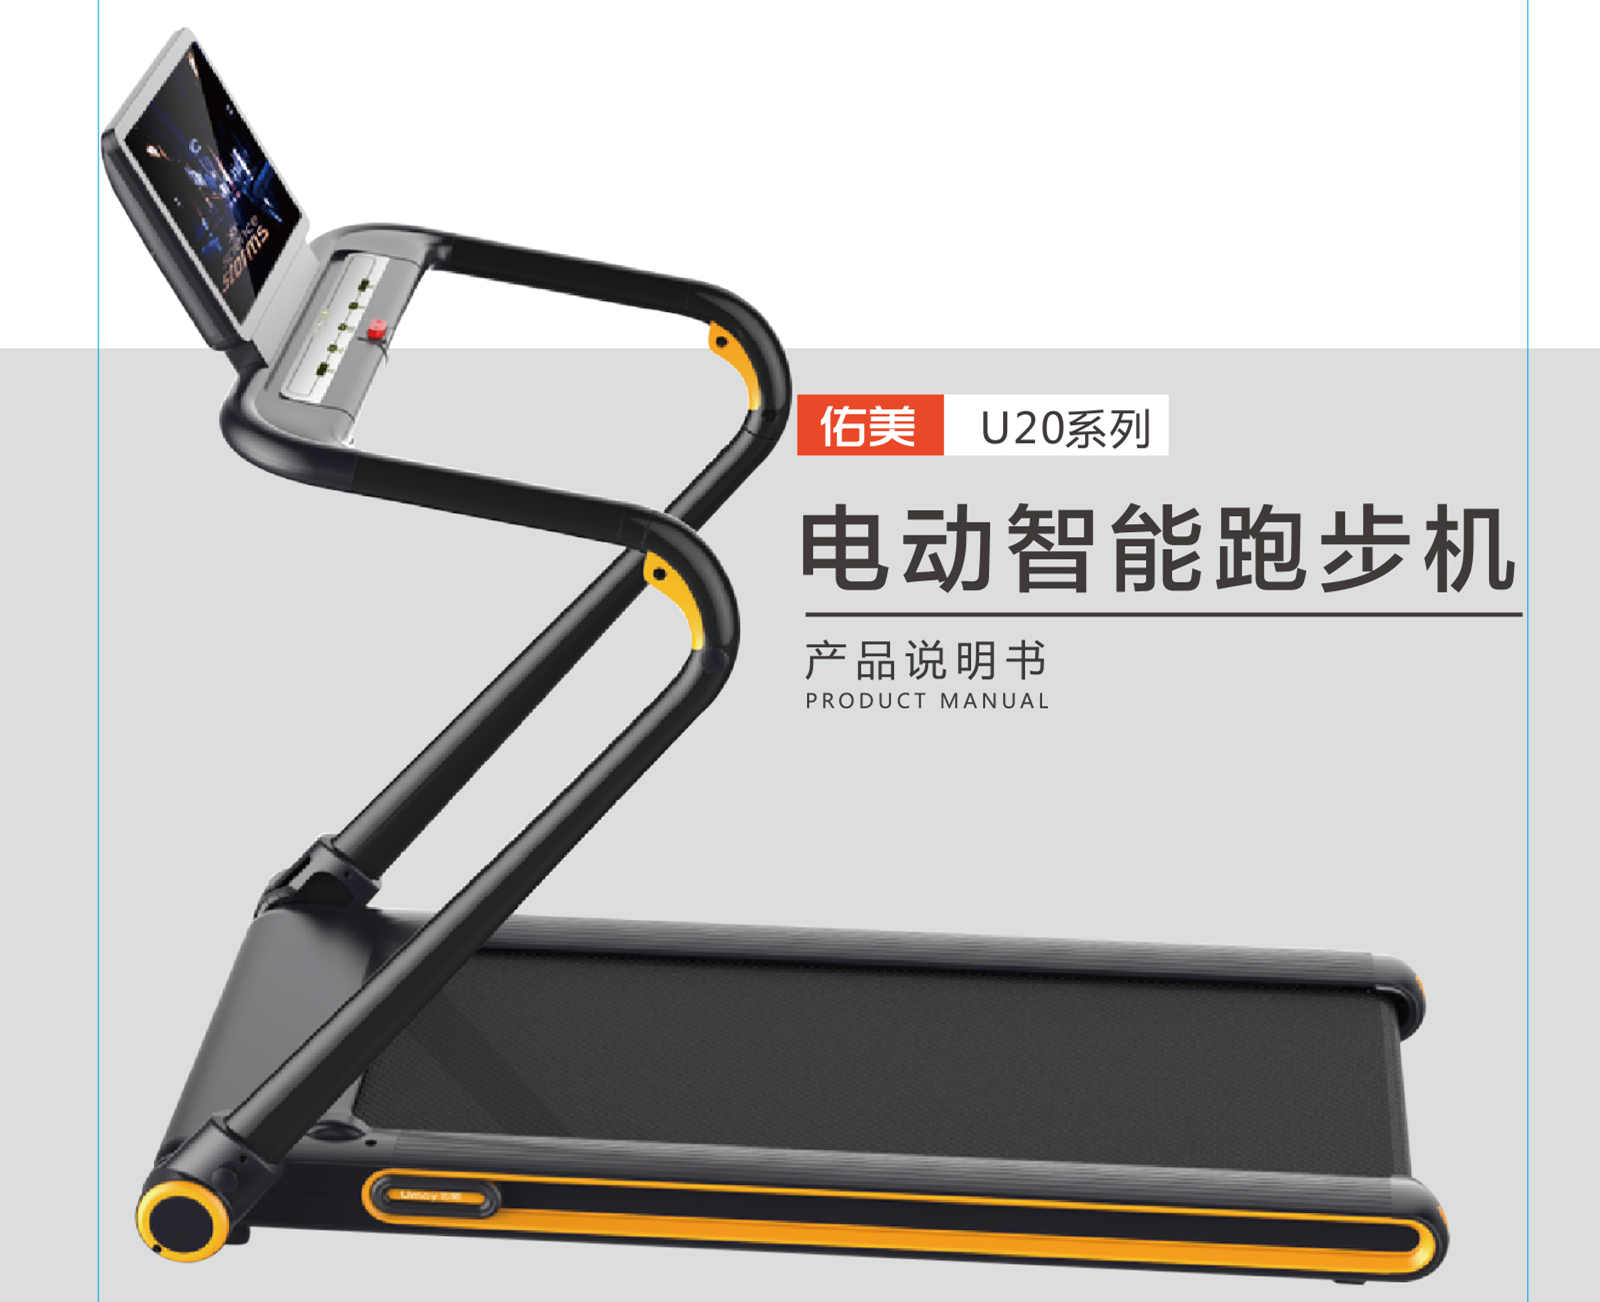 U20彩屏跑步机——安装说明、修理和保养